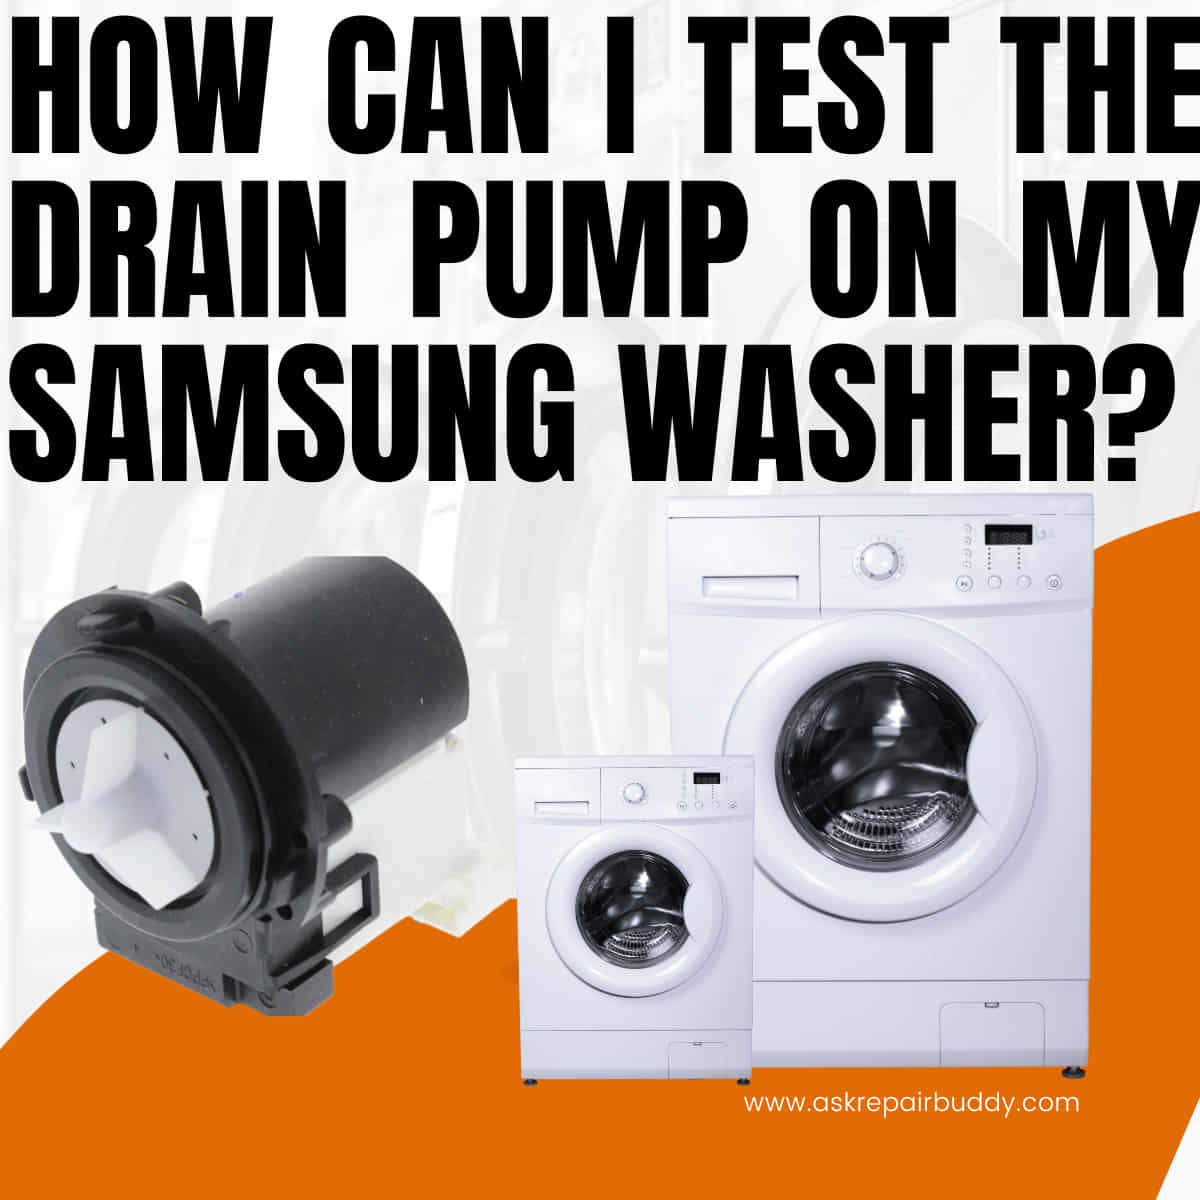 Samsung washing machine drain pump test